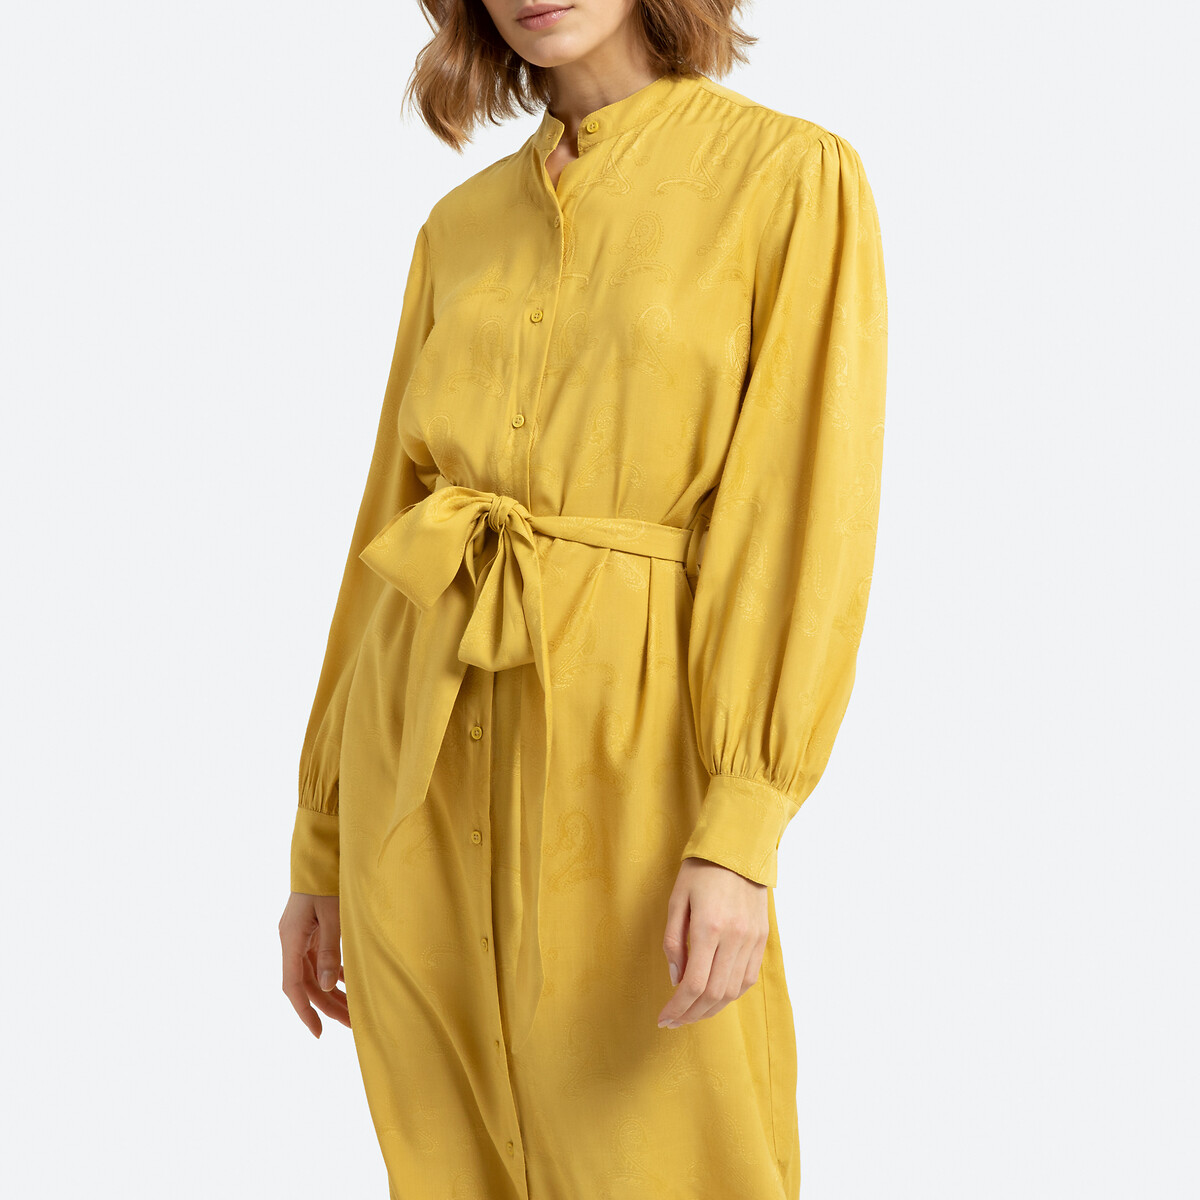 Платье-рубашка La Redoute Длинное с длинными рукавами 42 (FR) - 48 (RUS) желтый, размер 42 (FR) - 48 (RUS) Длинное с длинными рукавами 42 (FR) - 48 (RUS) желтый - фото 2